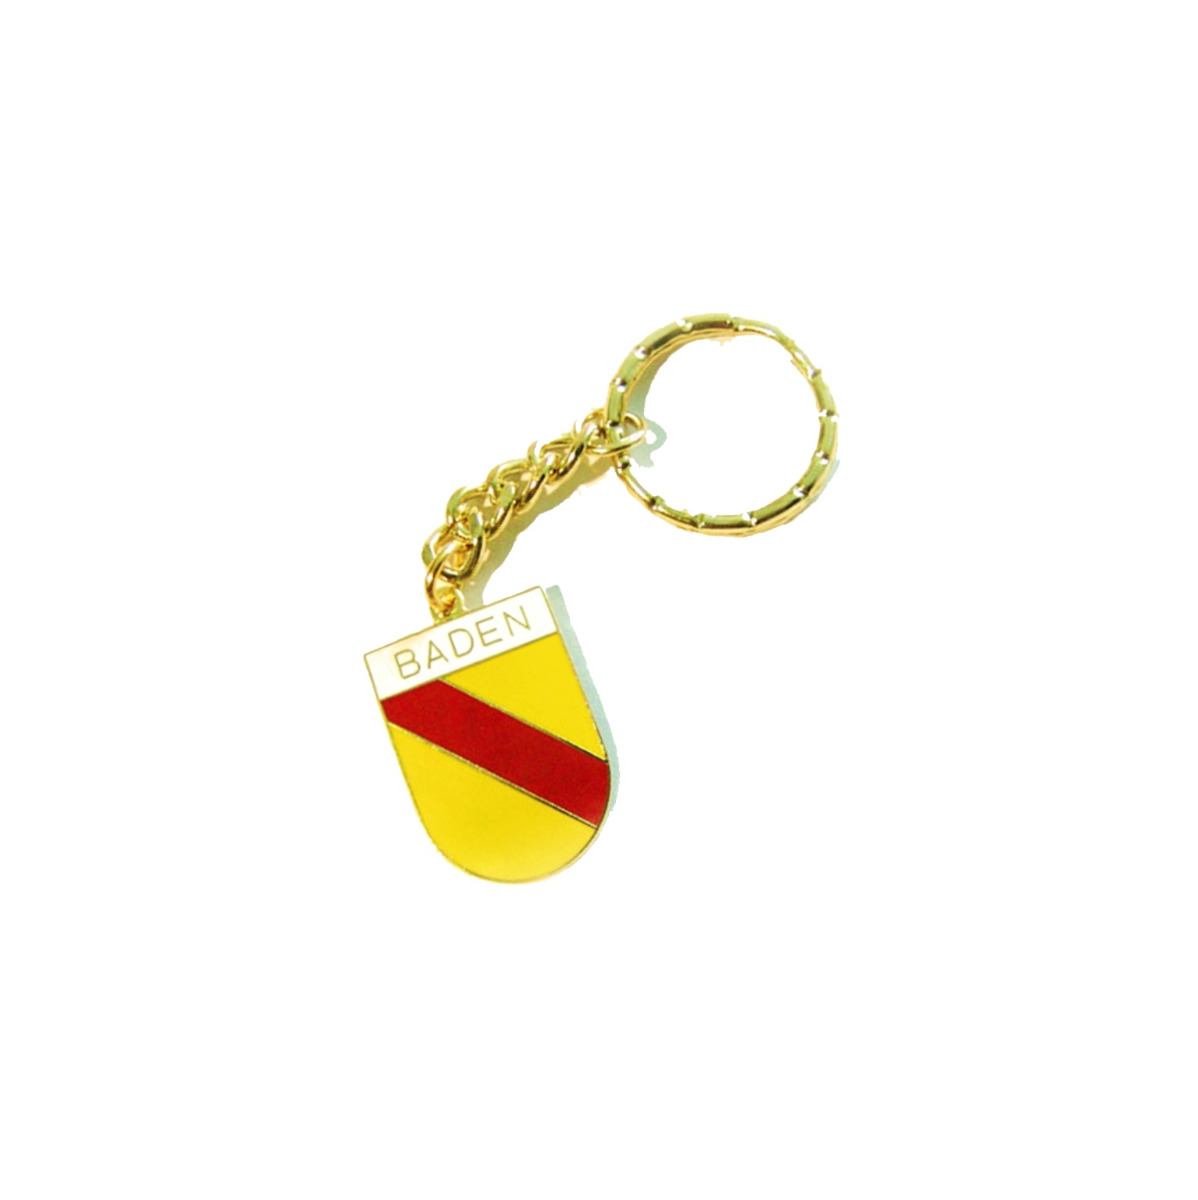 Schlüsselanhänger "Baden" (Wappen)